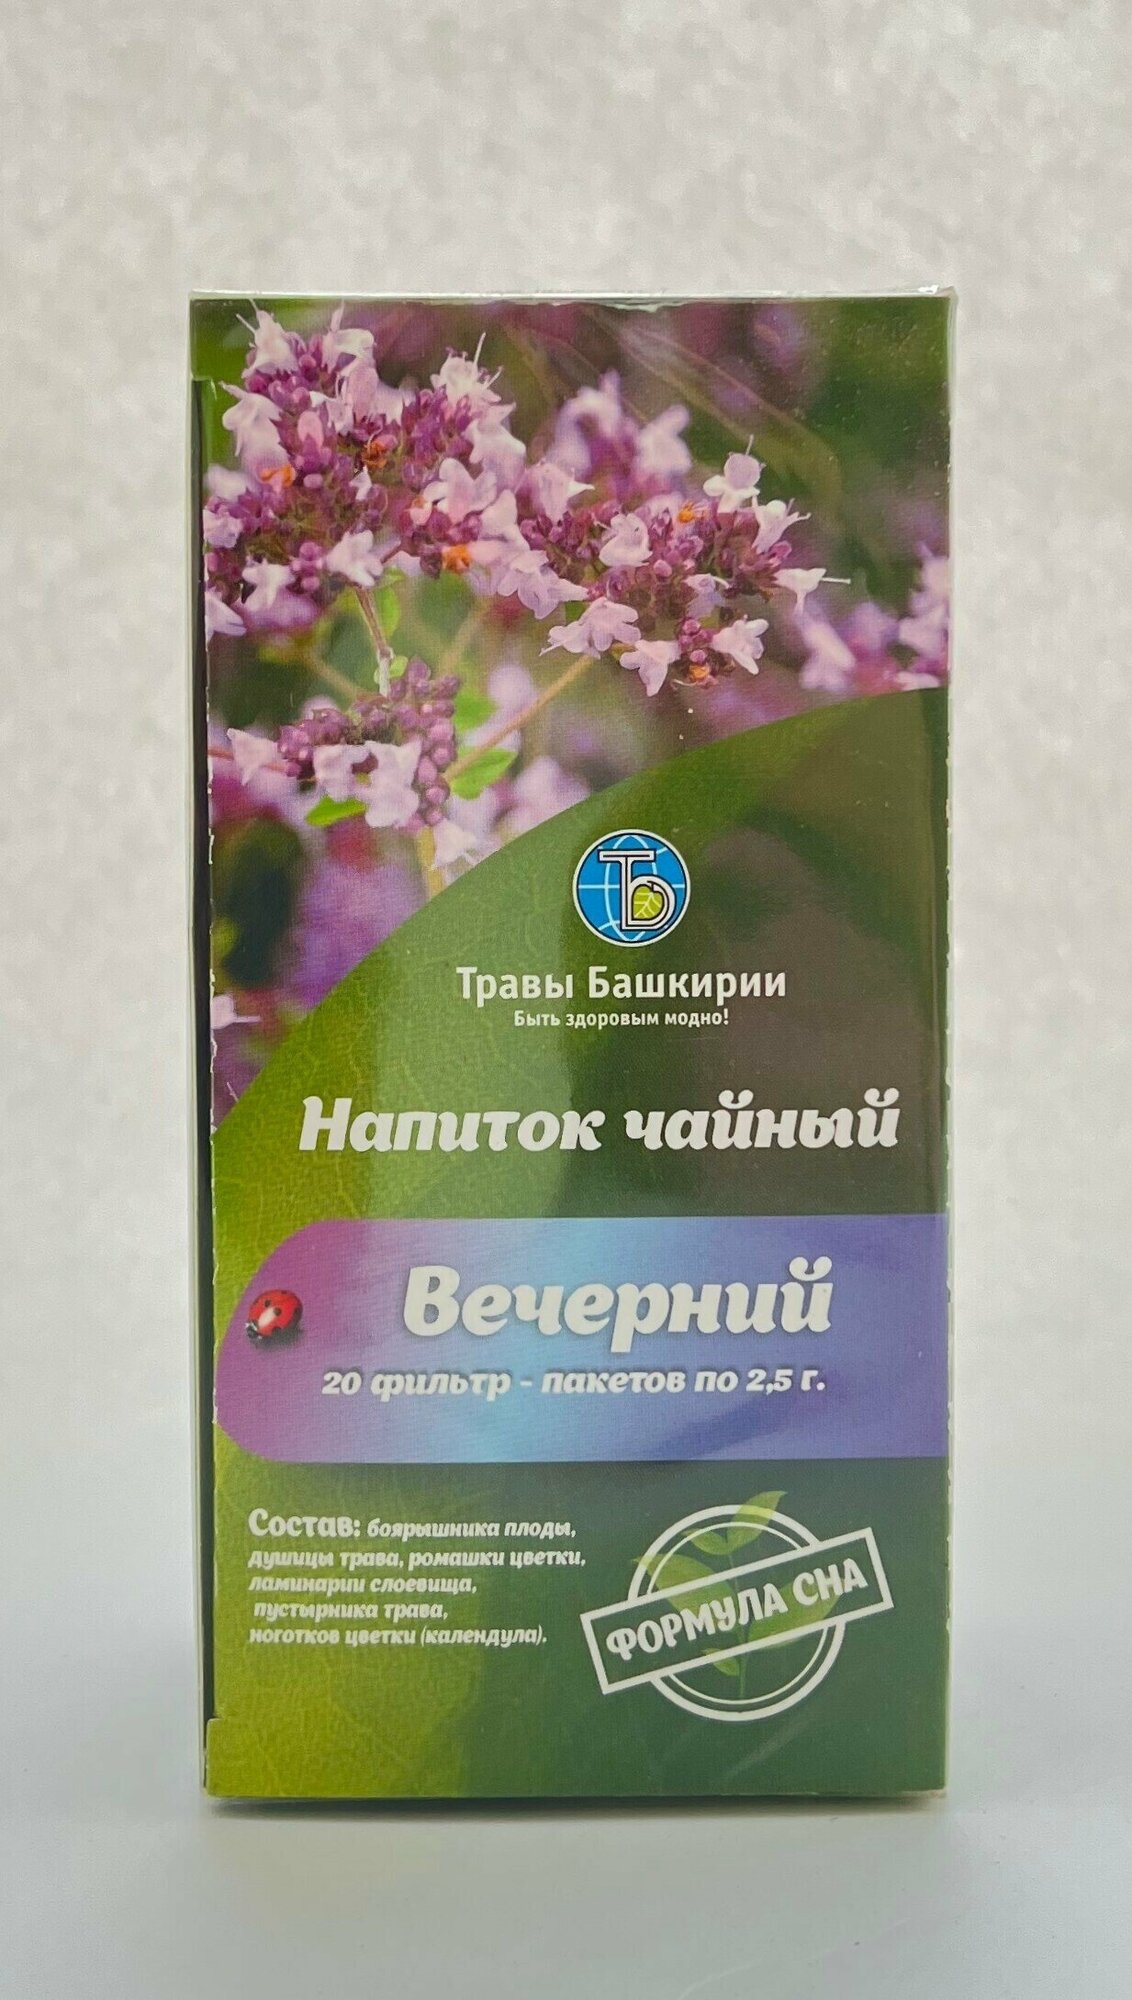 Напиток чайный "Вечерний", Травы Башкирии, 20 фильтр пакетов по 2,5 гр. - фотография № 2